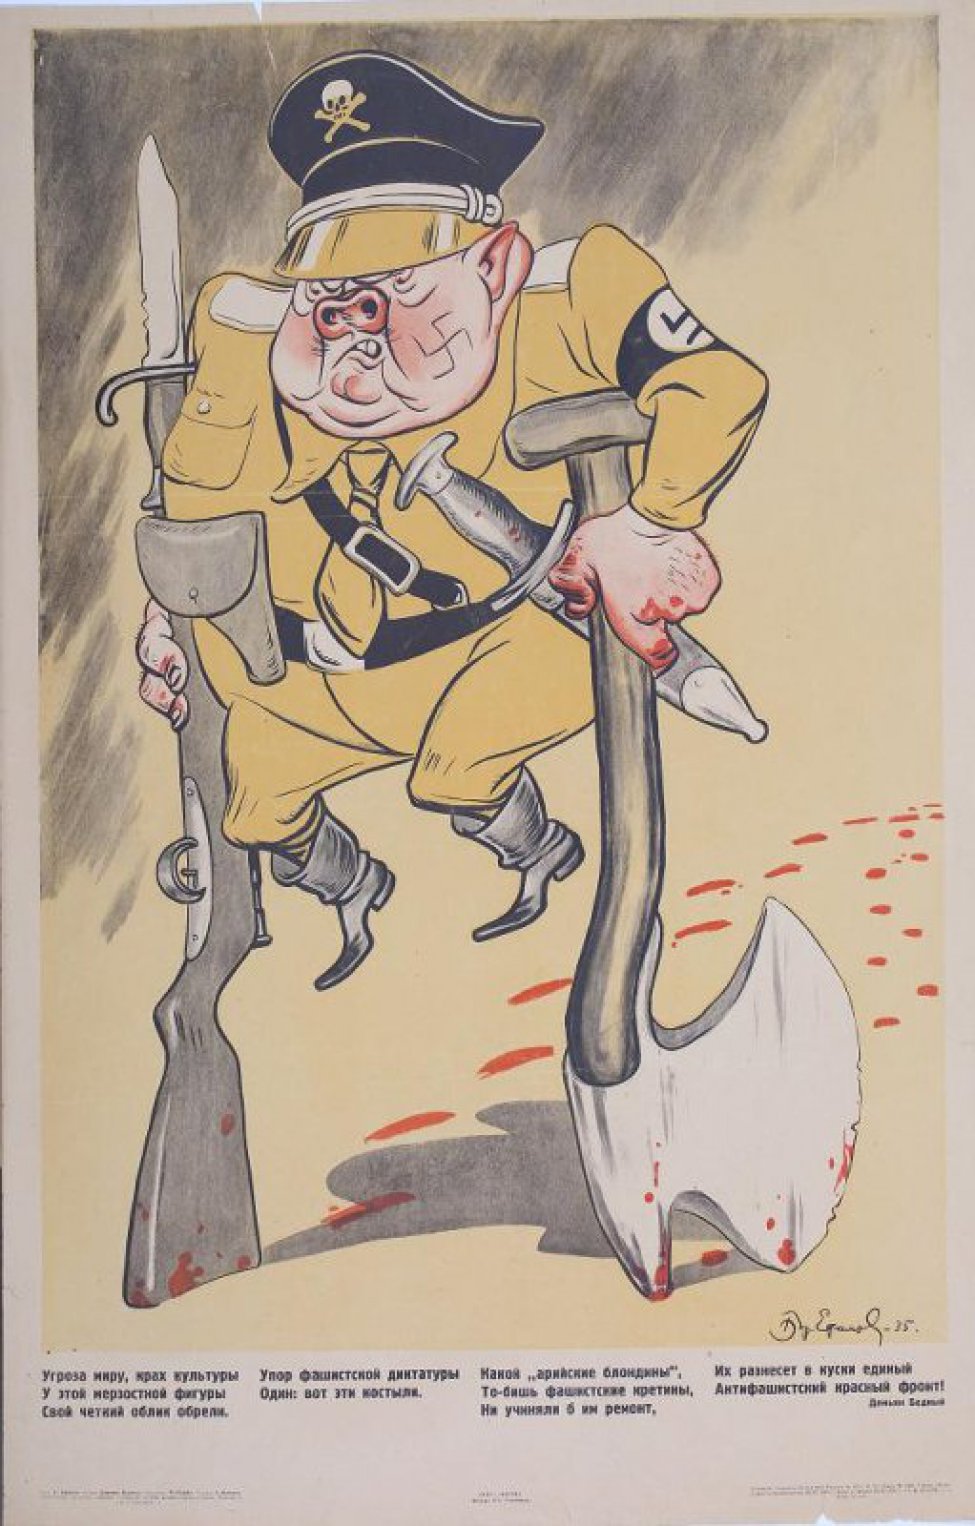 Изображен фашист опирающего на костыли из окровавленных винтовок и топора. Ниже стихи Демьяна Бедного.